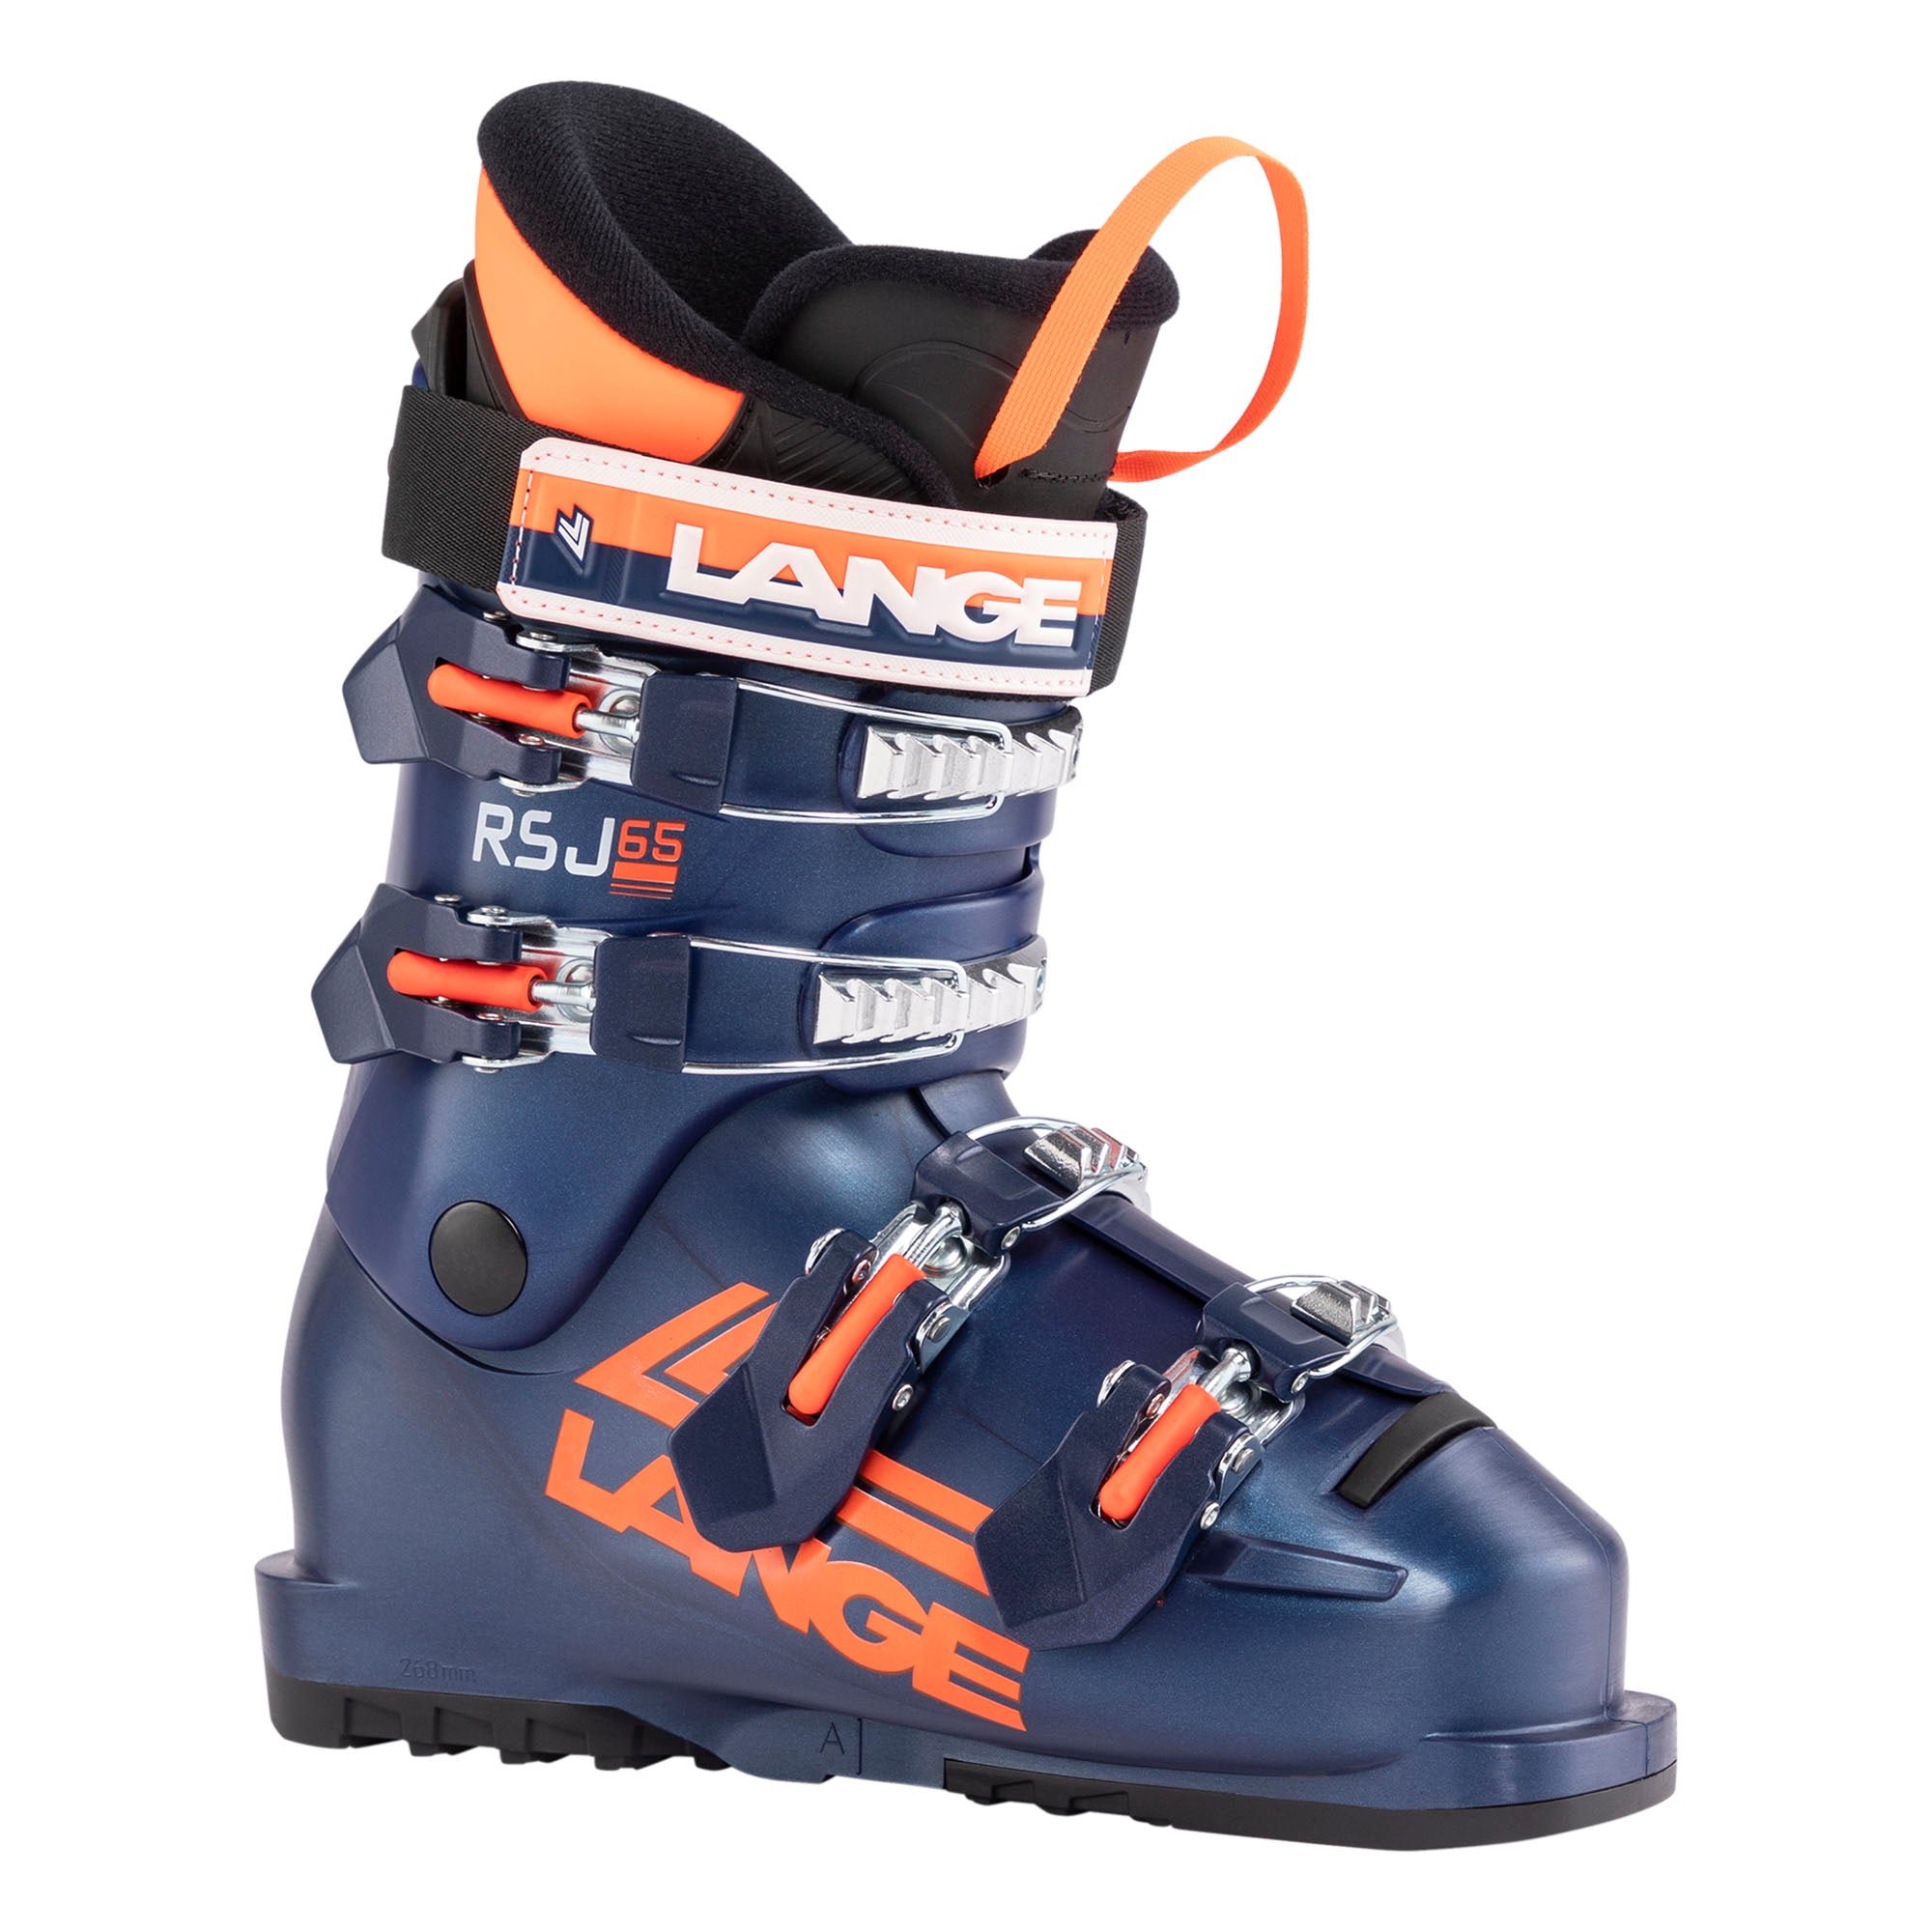 Junior Lange RSJ 65 ski boot, dark blue with orange accents.